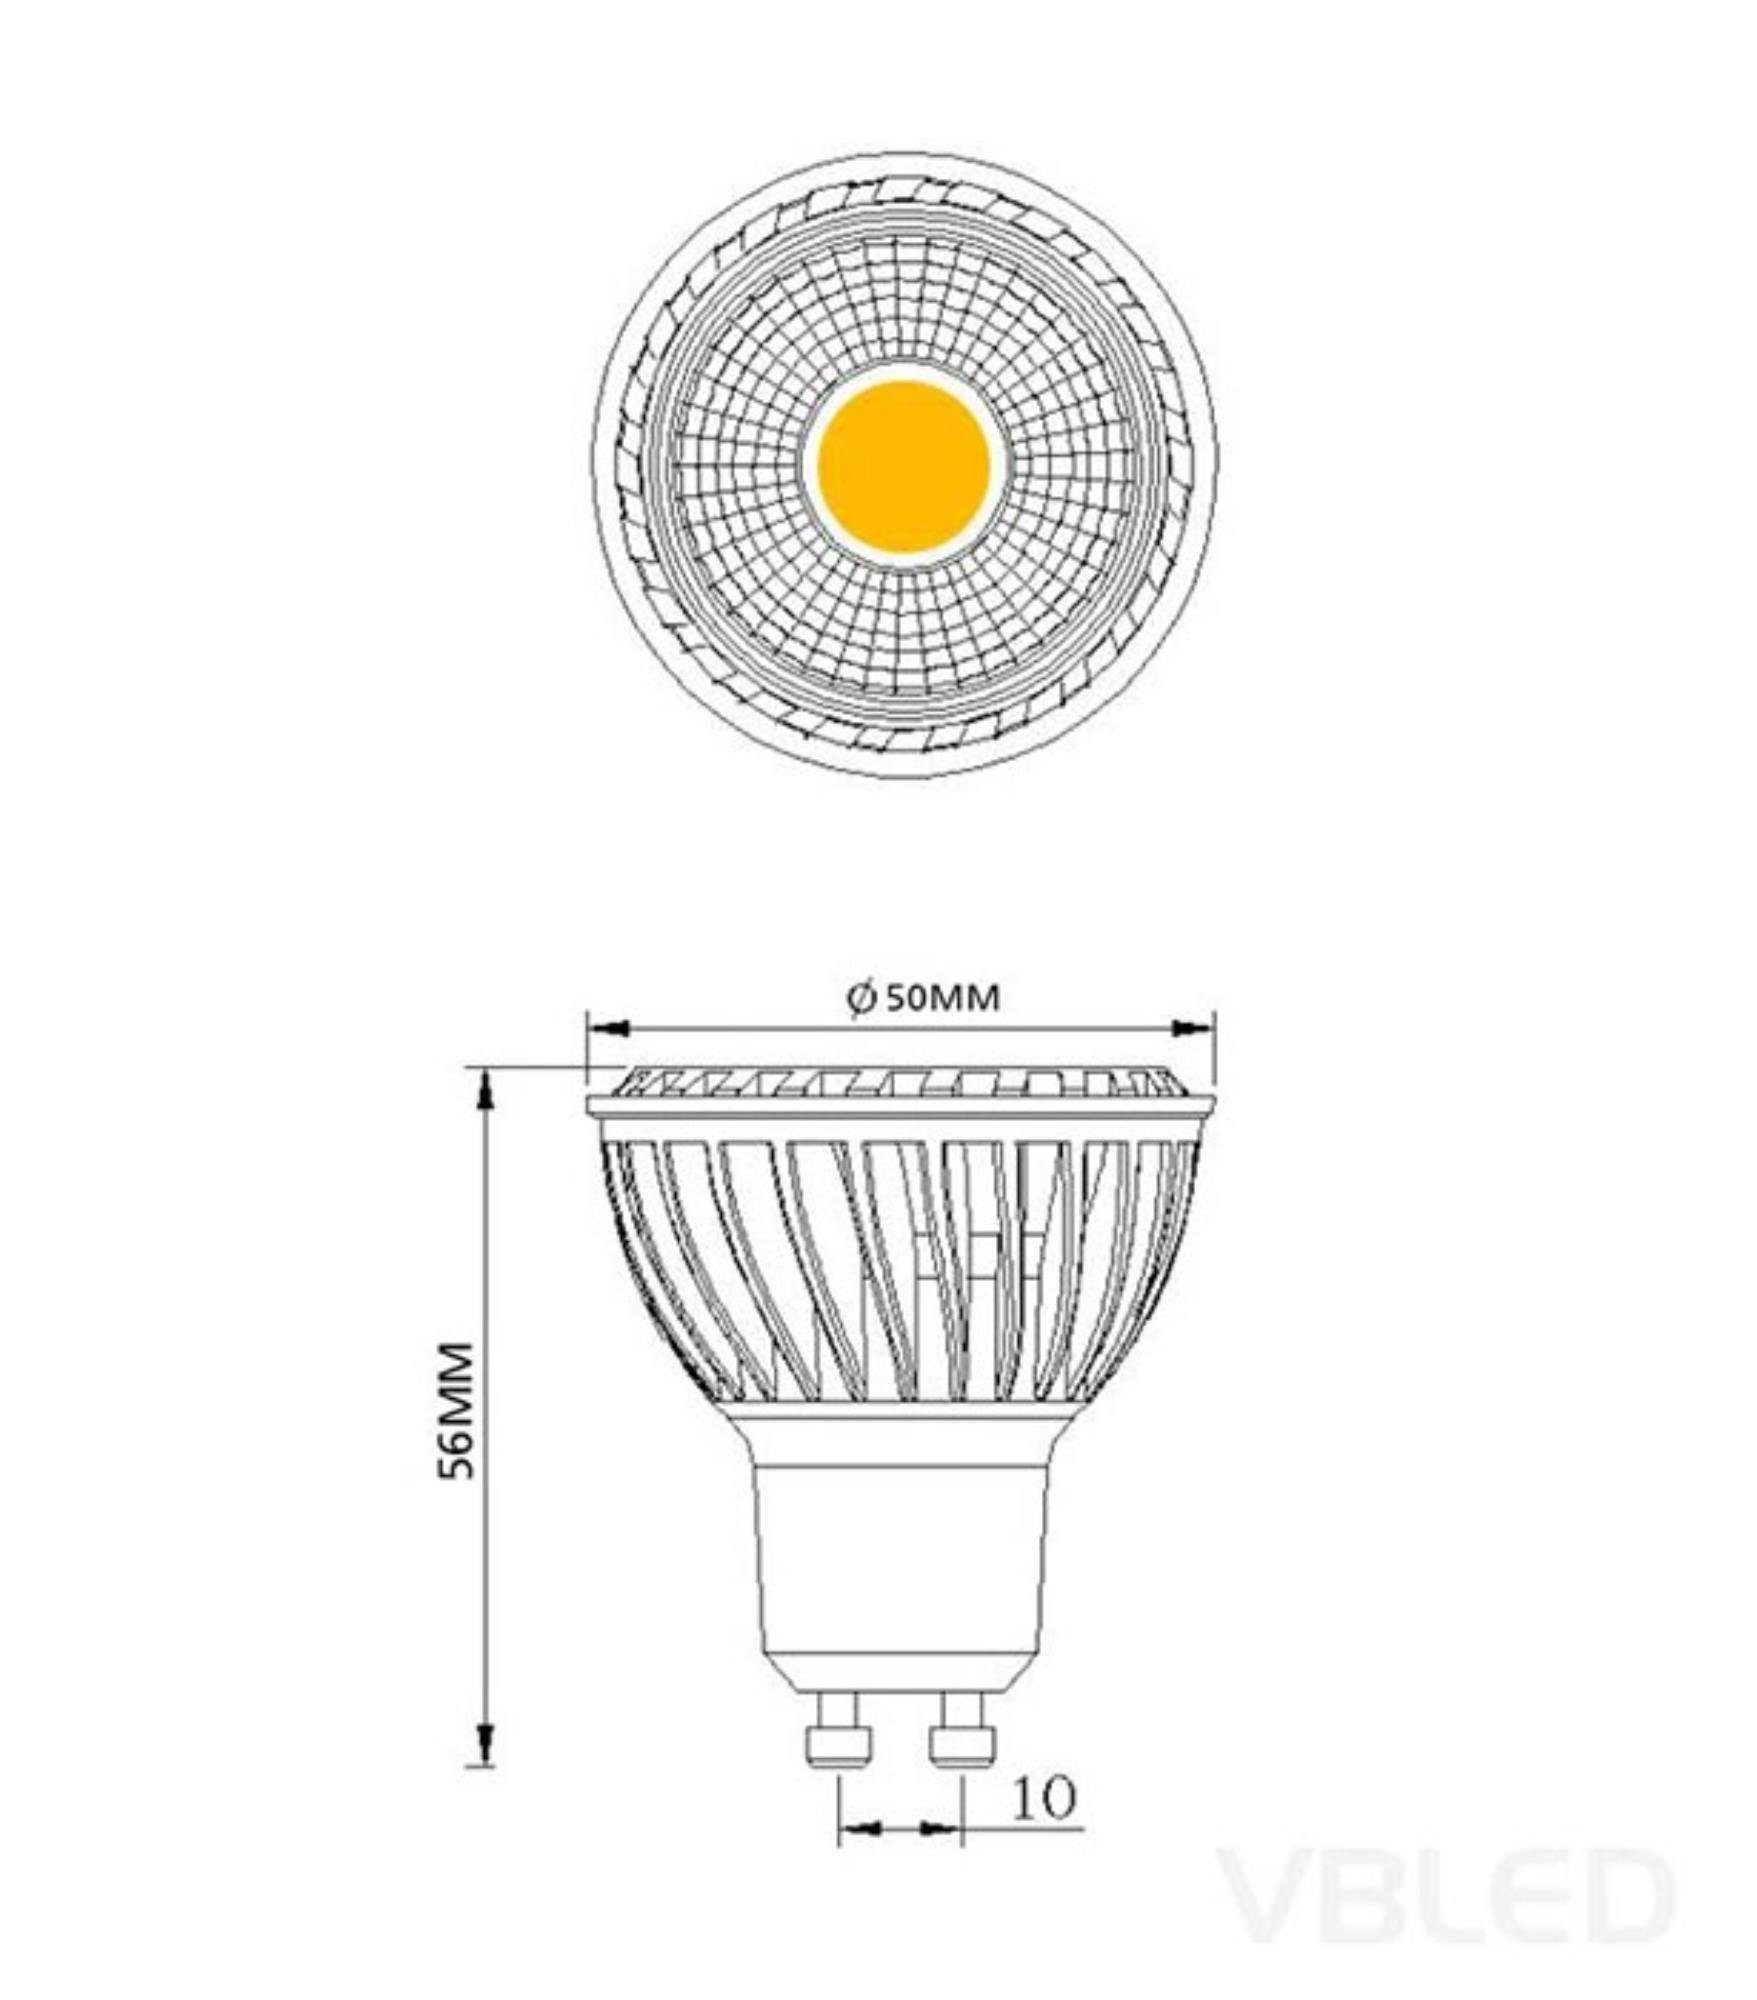 wechselbar, LED gebürstet Einbaustrahler warmweiß mit LED Set Einbaustrahler rund 10er LED Leuchtmittel, VBLED